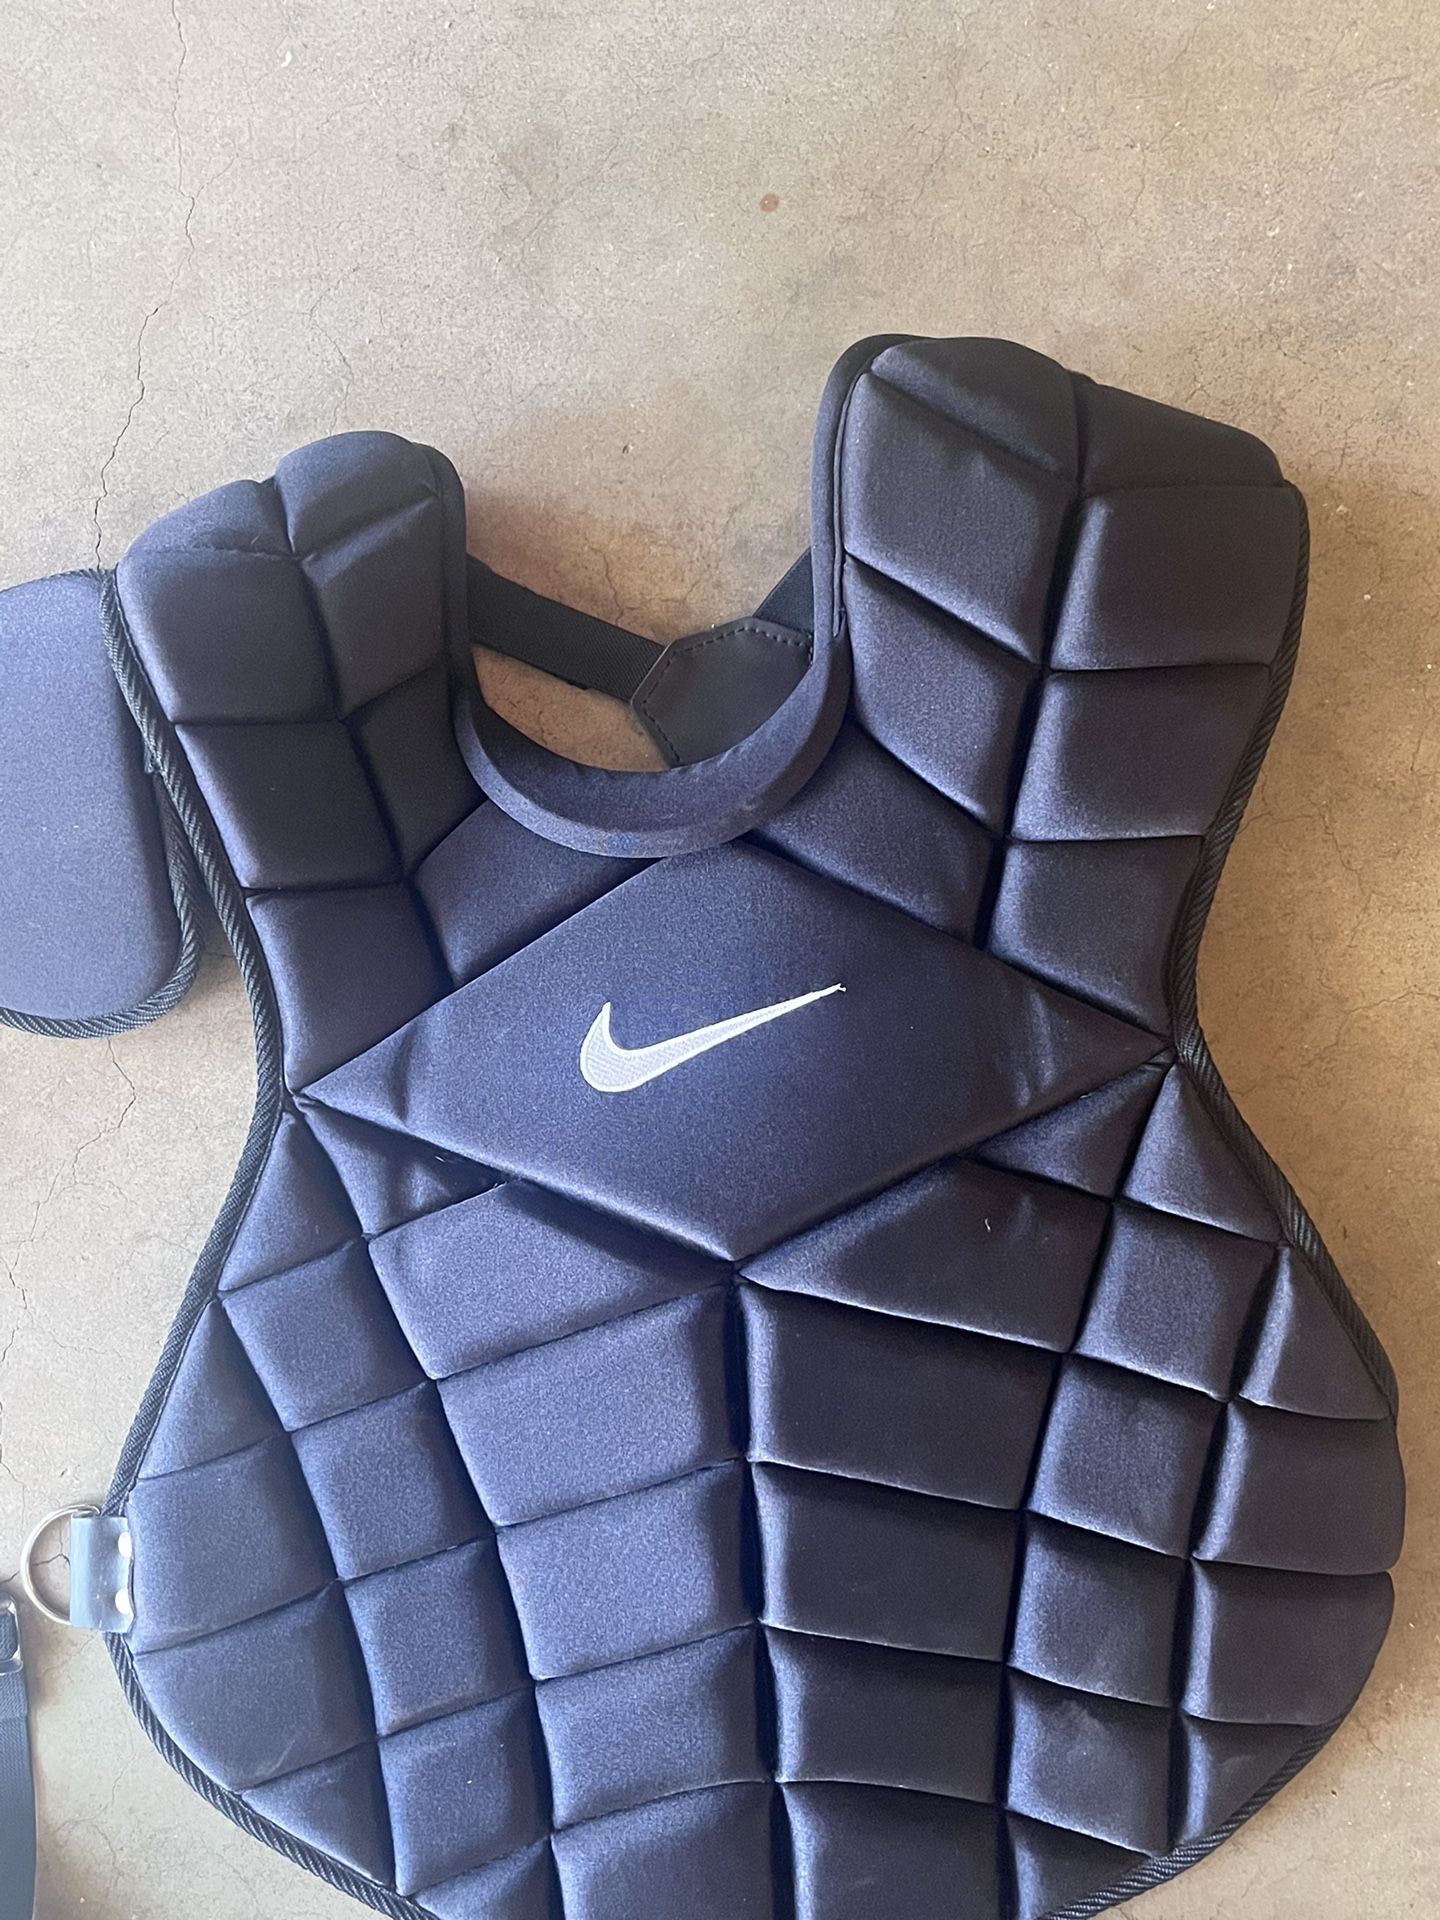 Nike catchers Gear for Sale in Irwindale, CA - OfferUp